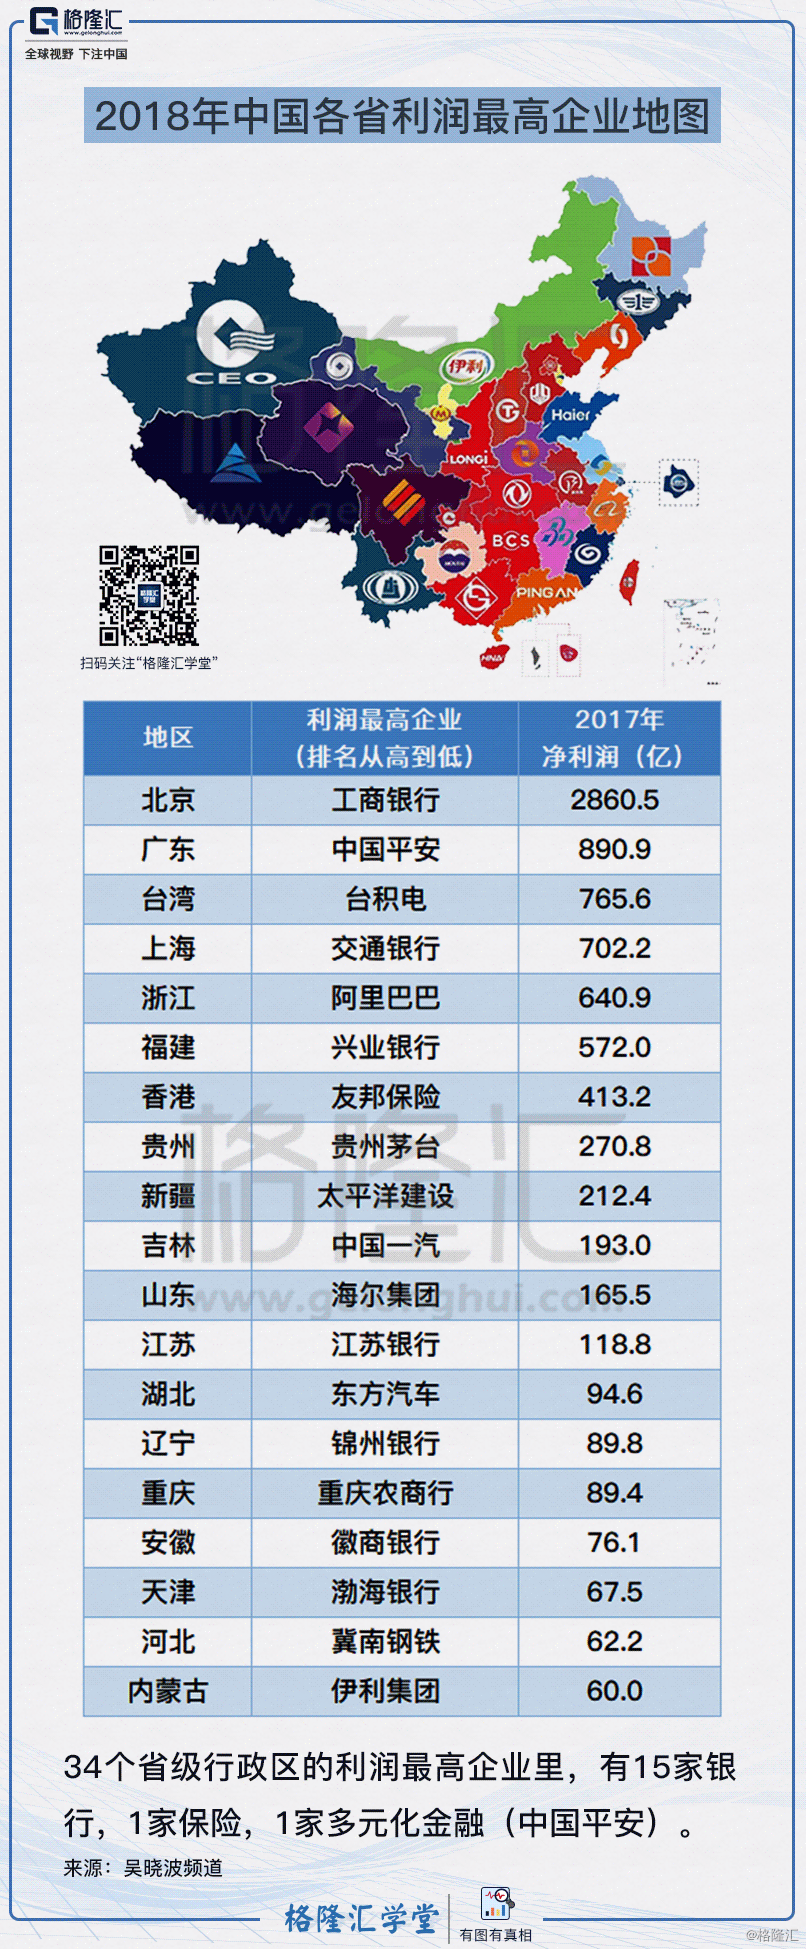 2.2018年中国各省利润最高企业地图.png